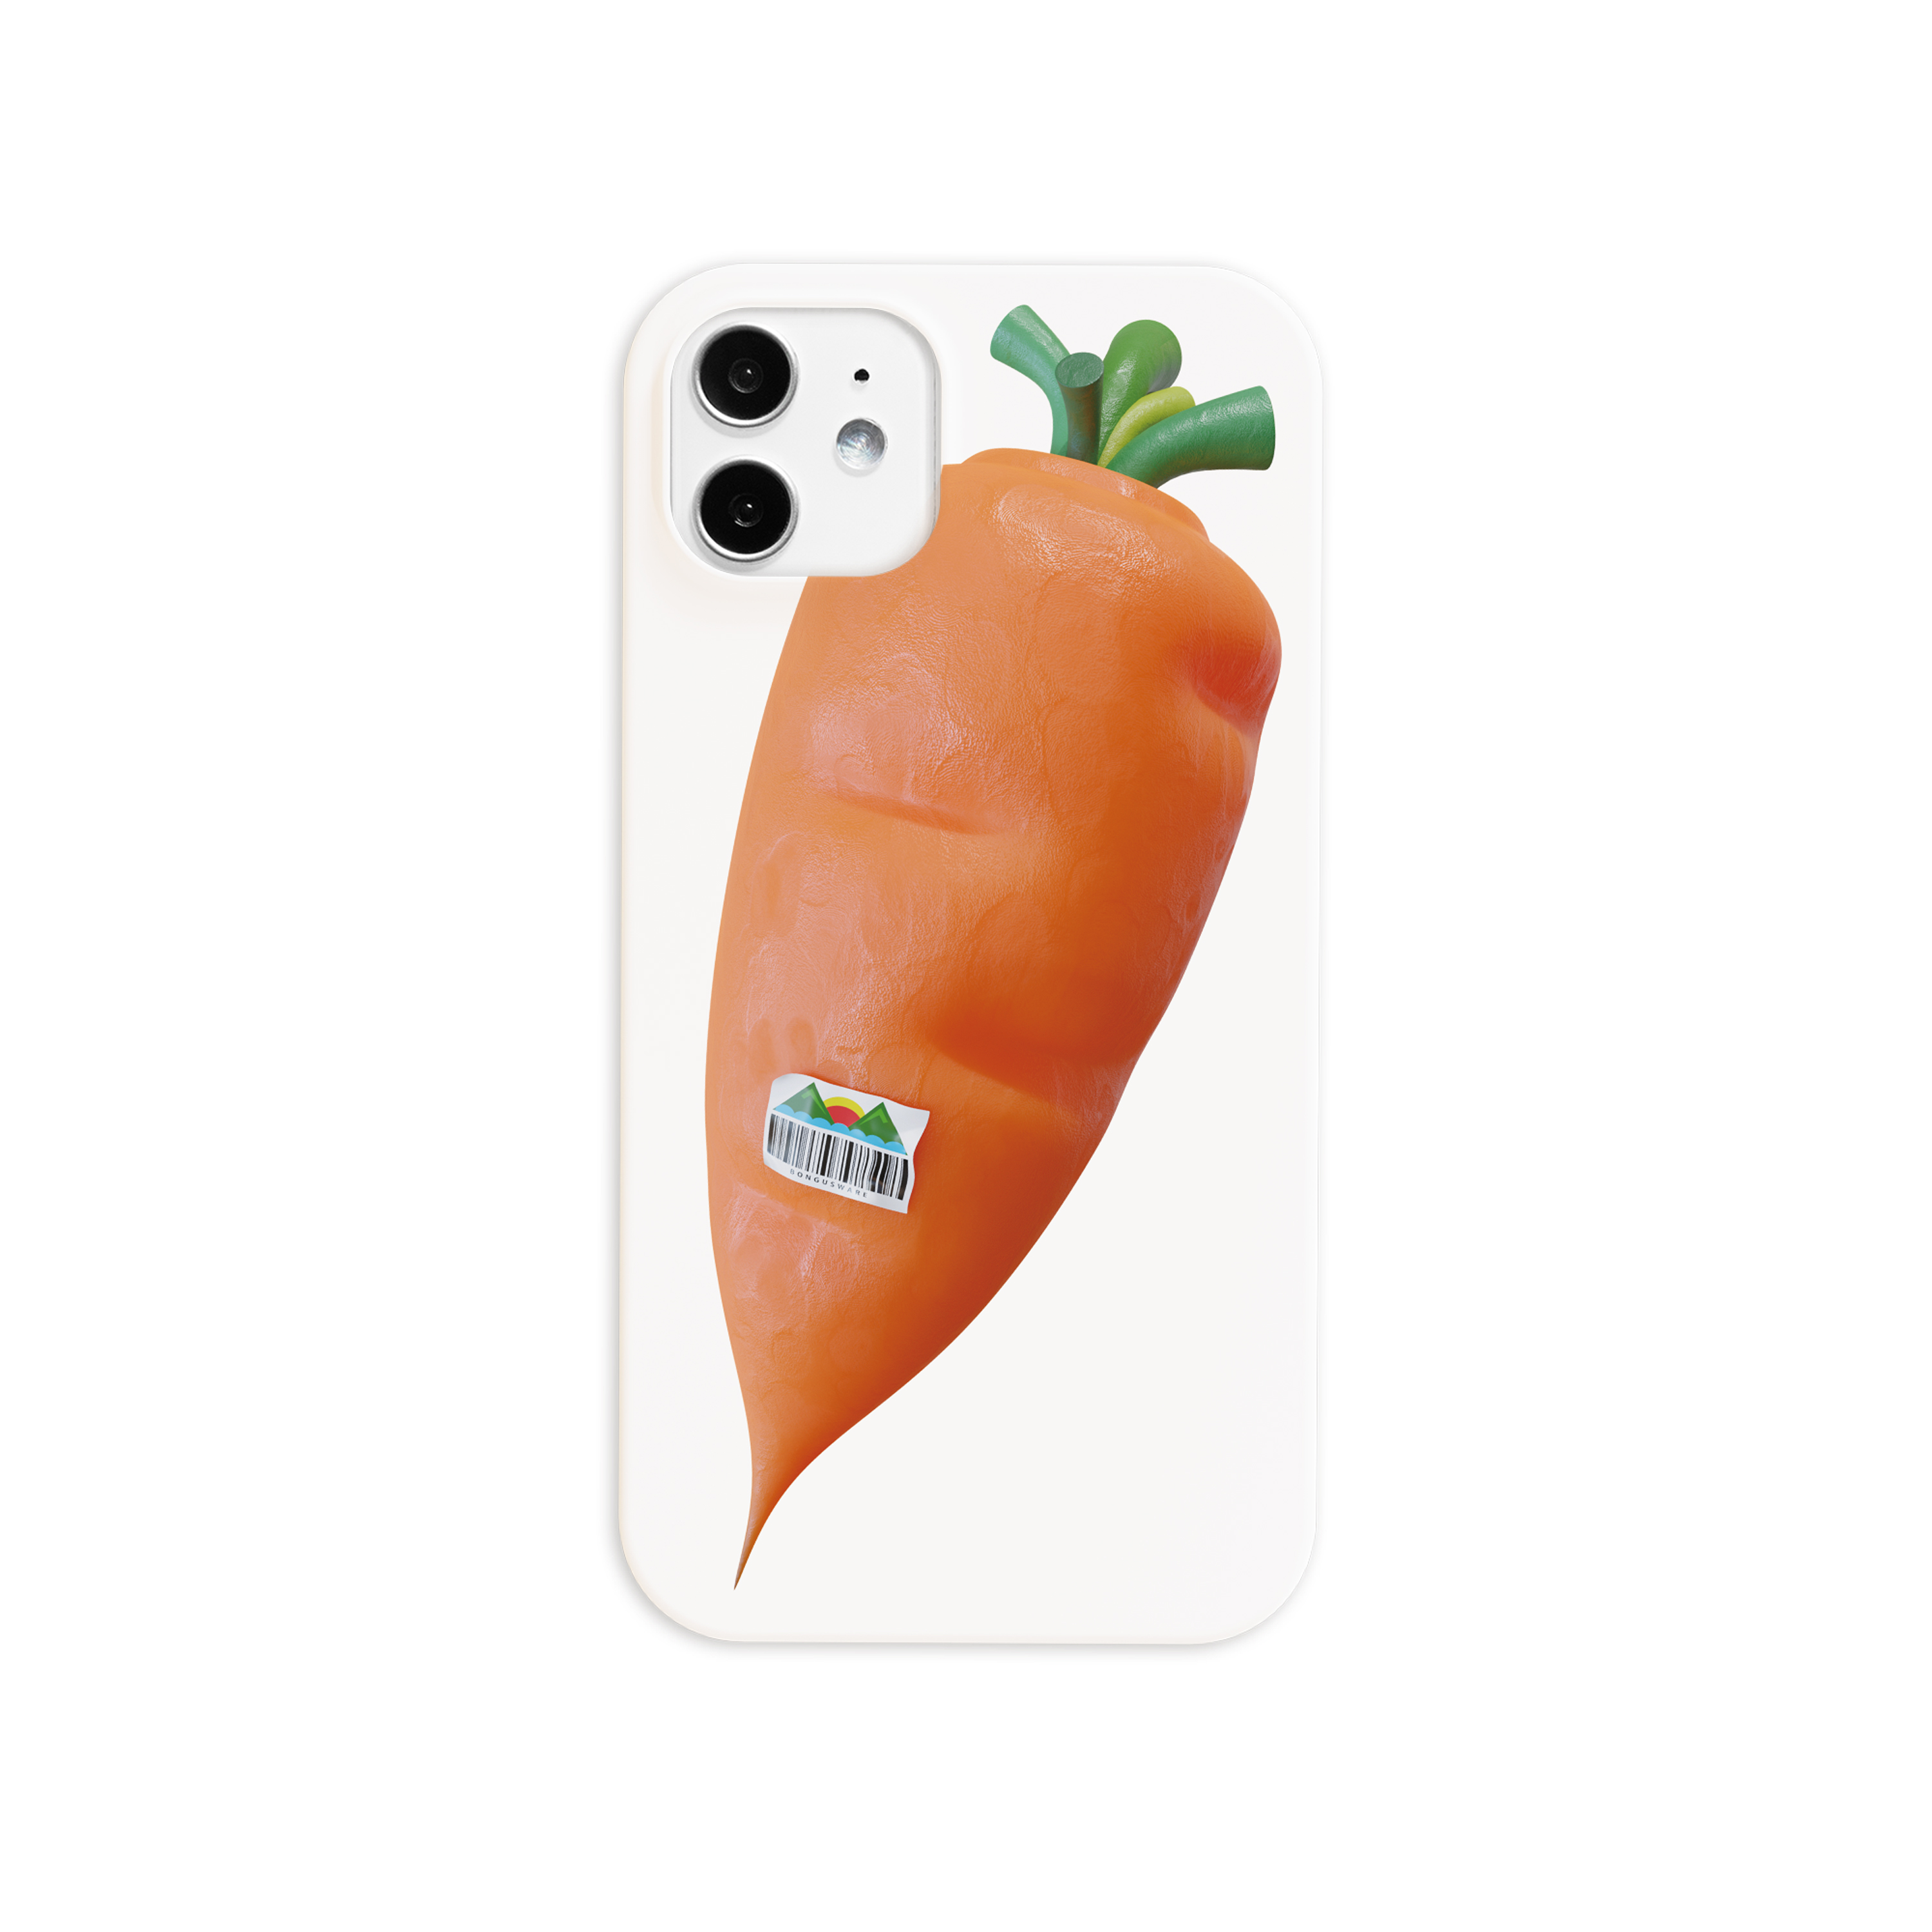 Buy some fruit! #Carrot case